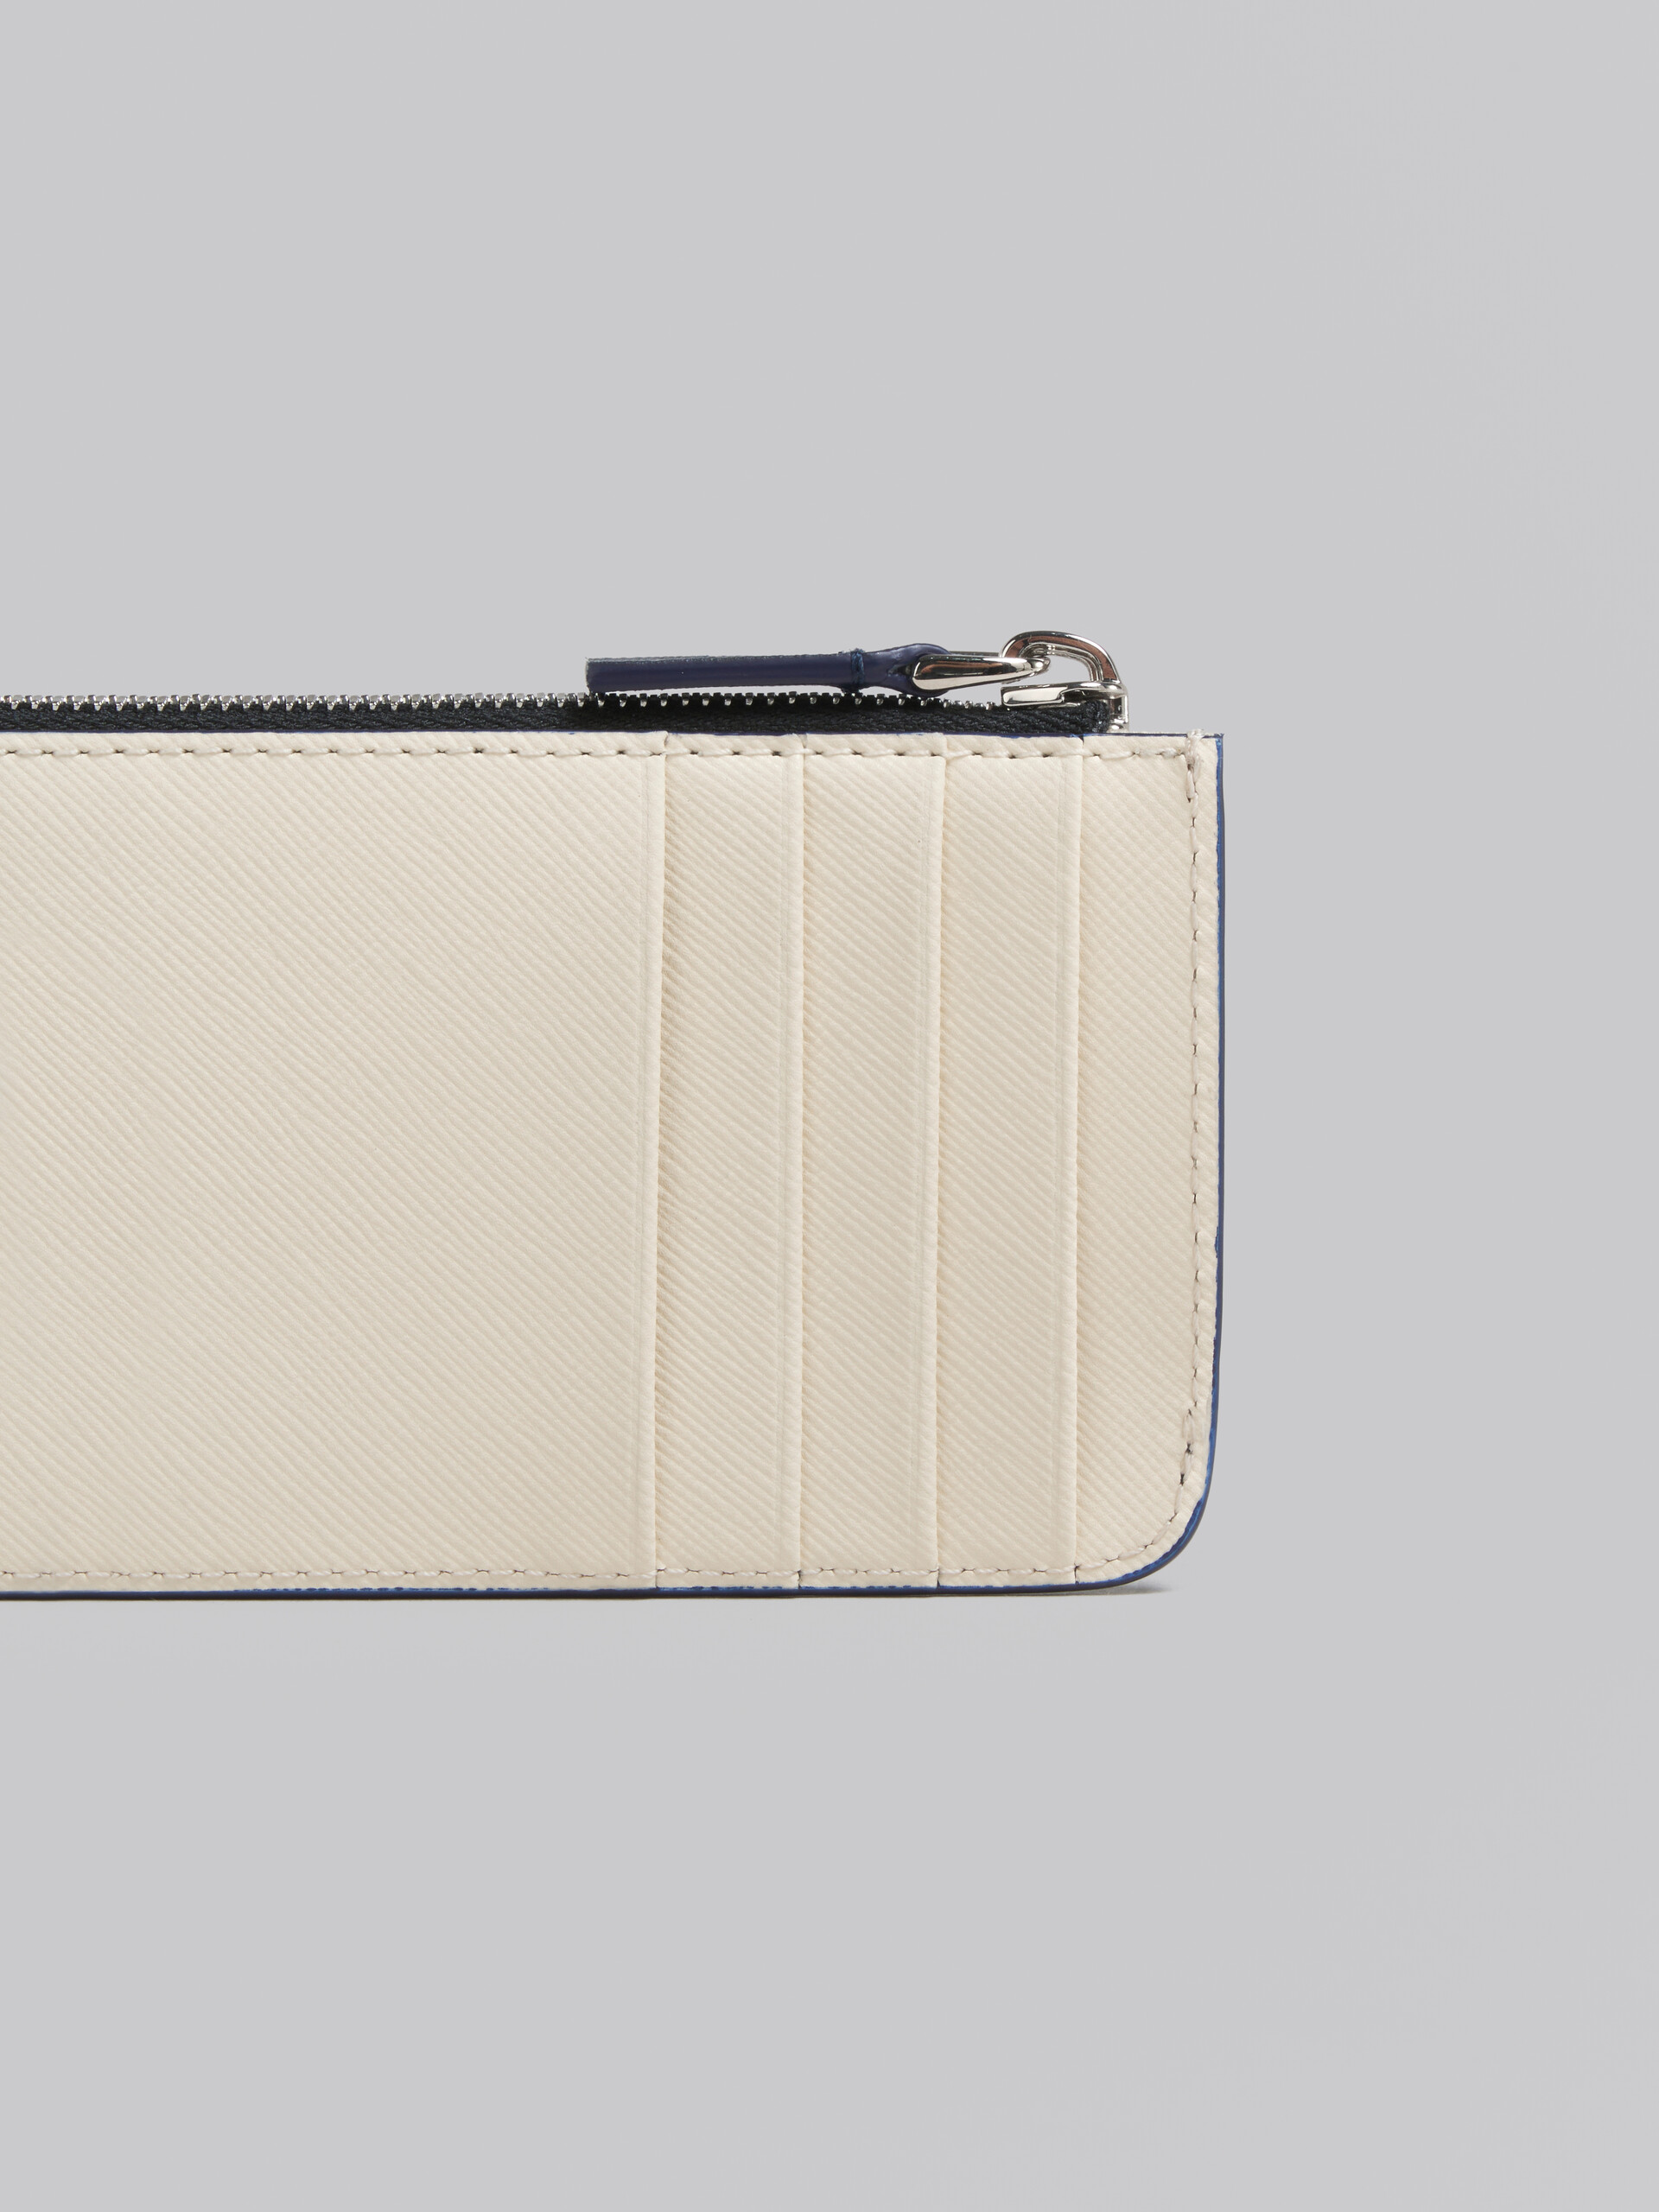 クリーム ディープブルー サフィアーノレザー製 カードホルダー、ファスナー式ポケット - 財布 - Image 4